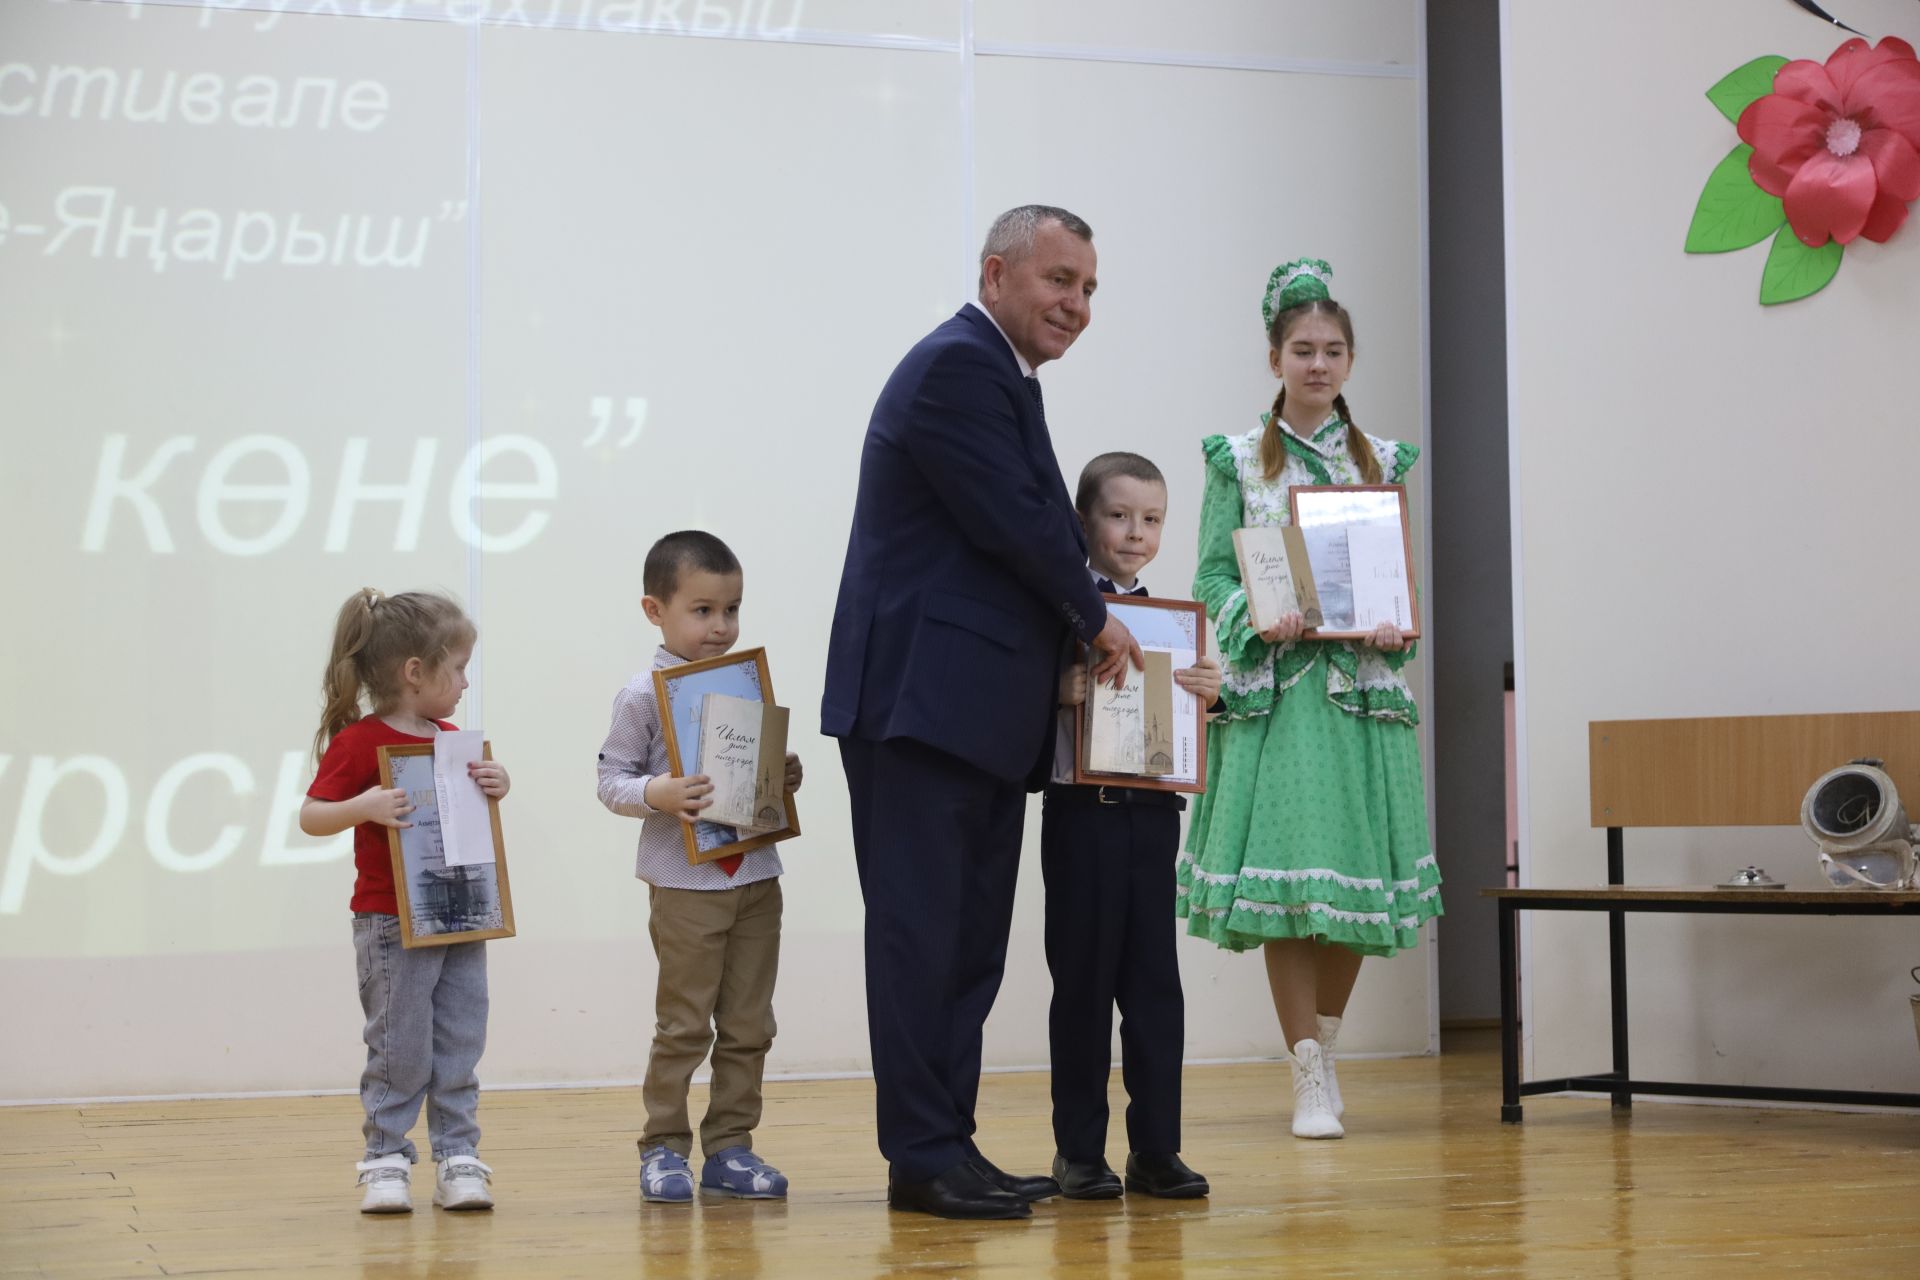 Фестиваль "Возрождение - Янарыш", награждение победителей конкурса "Жомга коне"